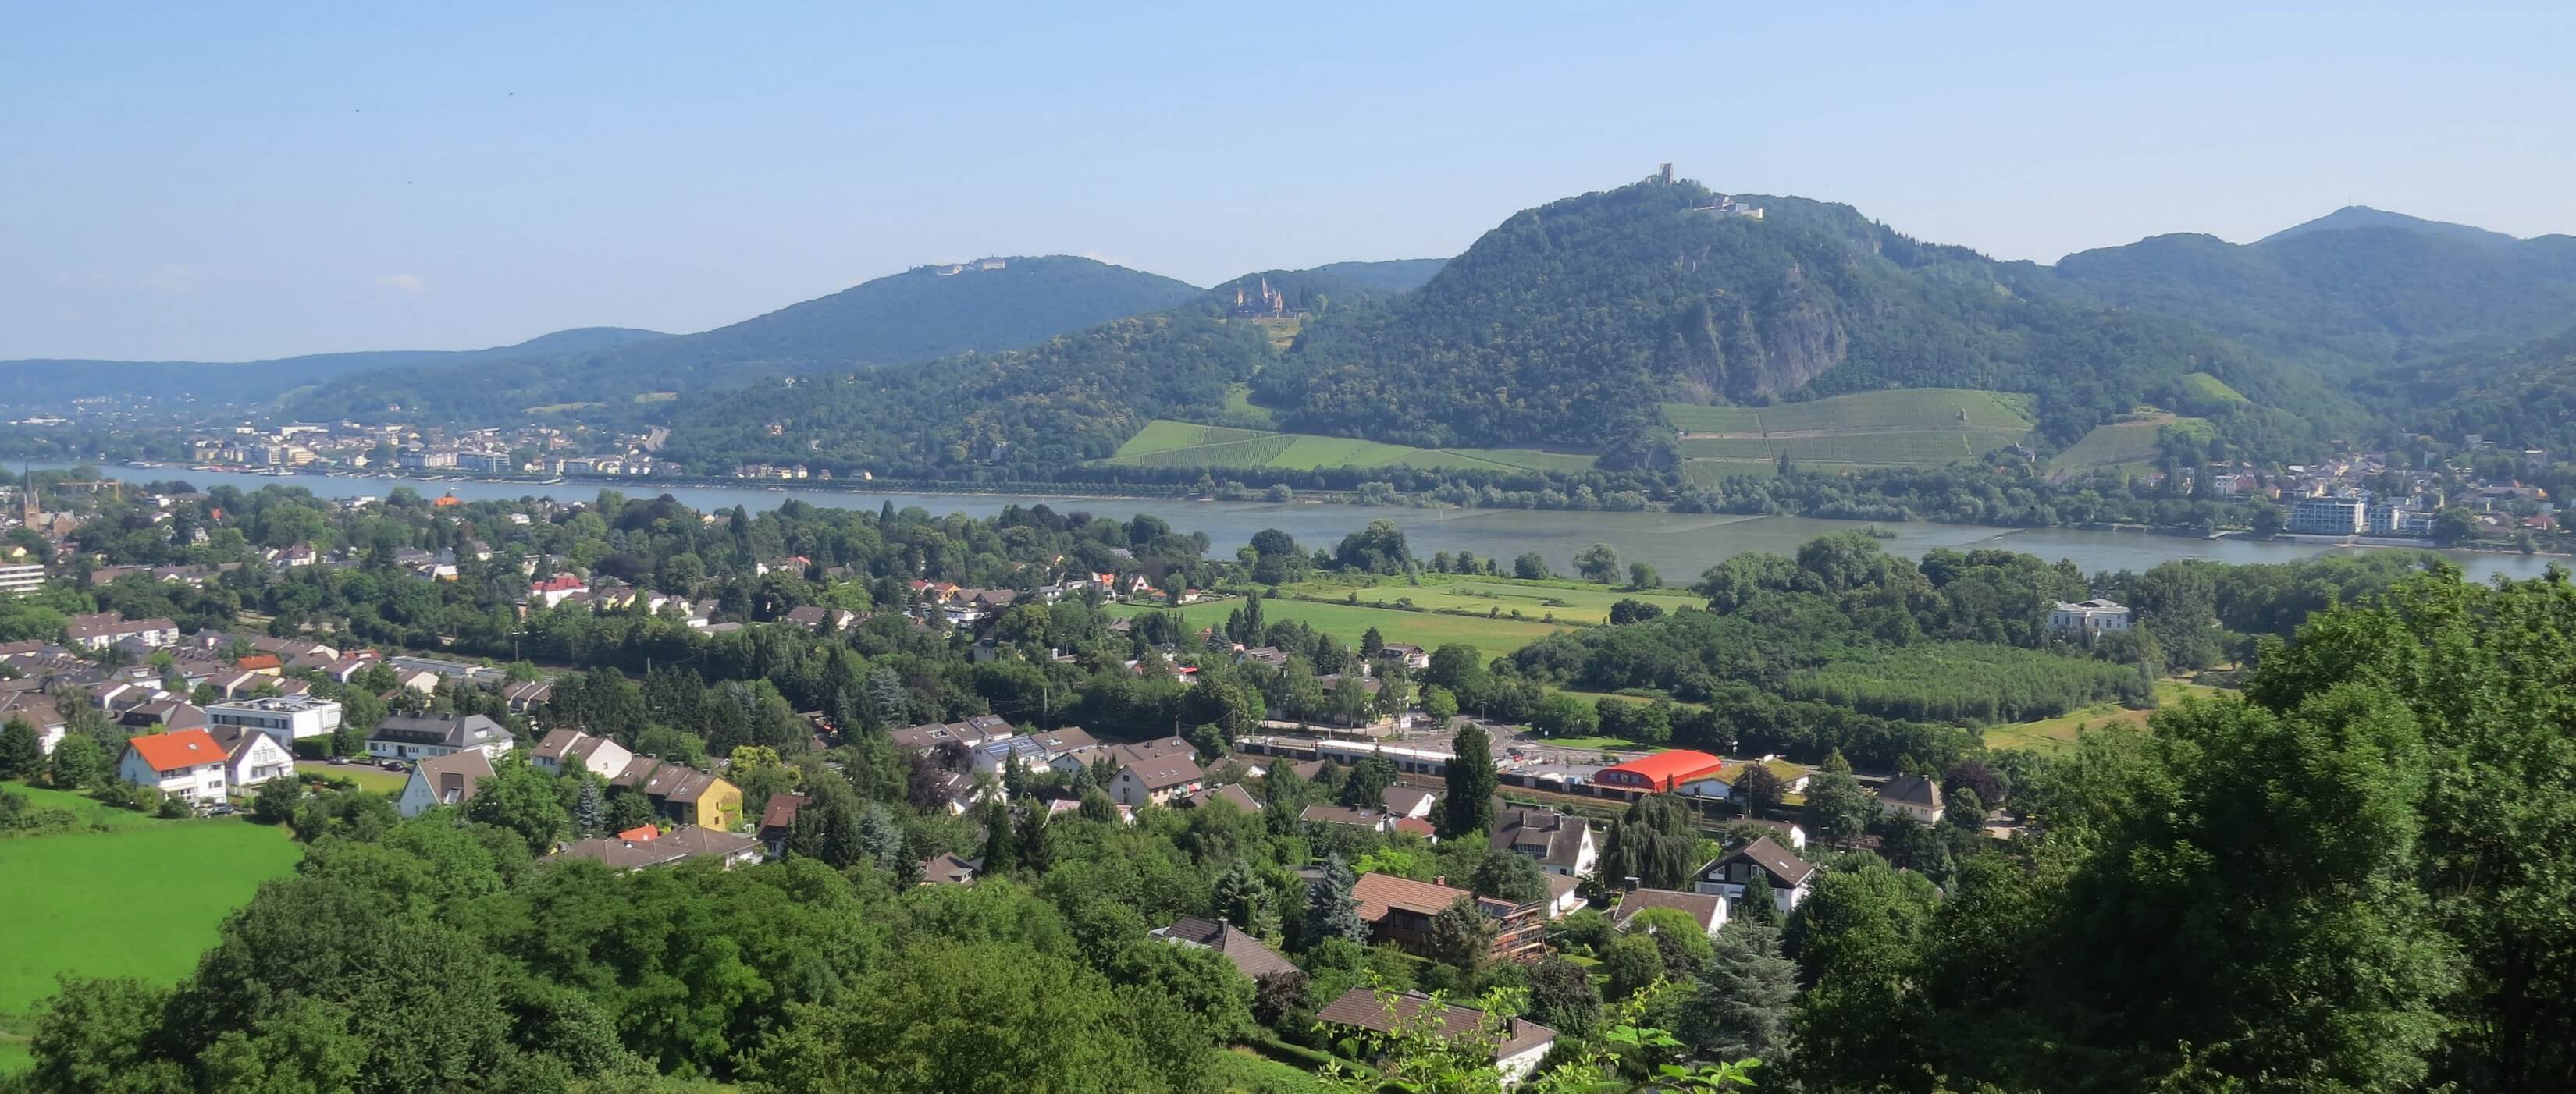 Blick auf das Siebengebirge vom Rodderberg - Lupe Reisen